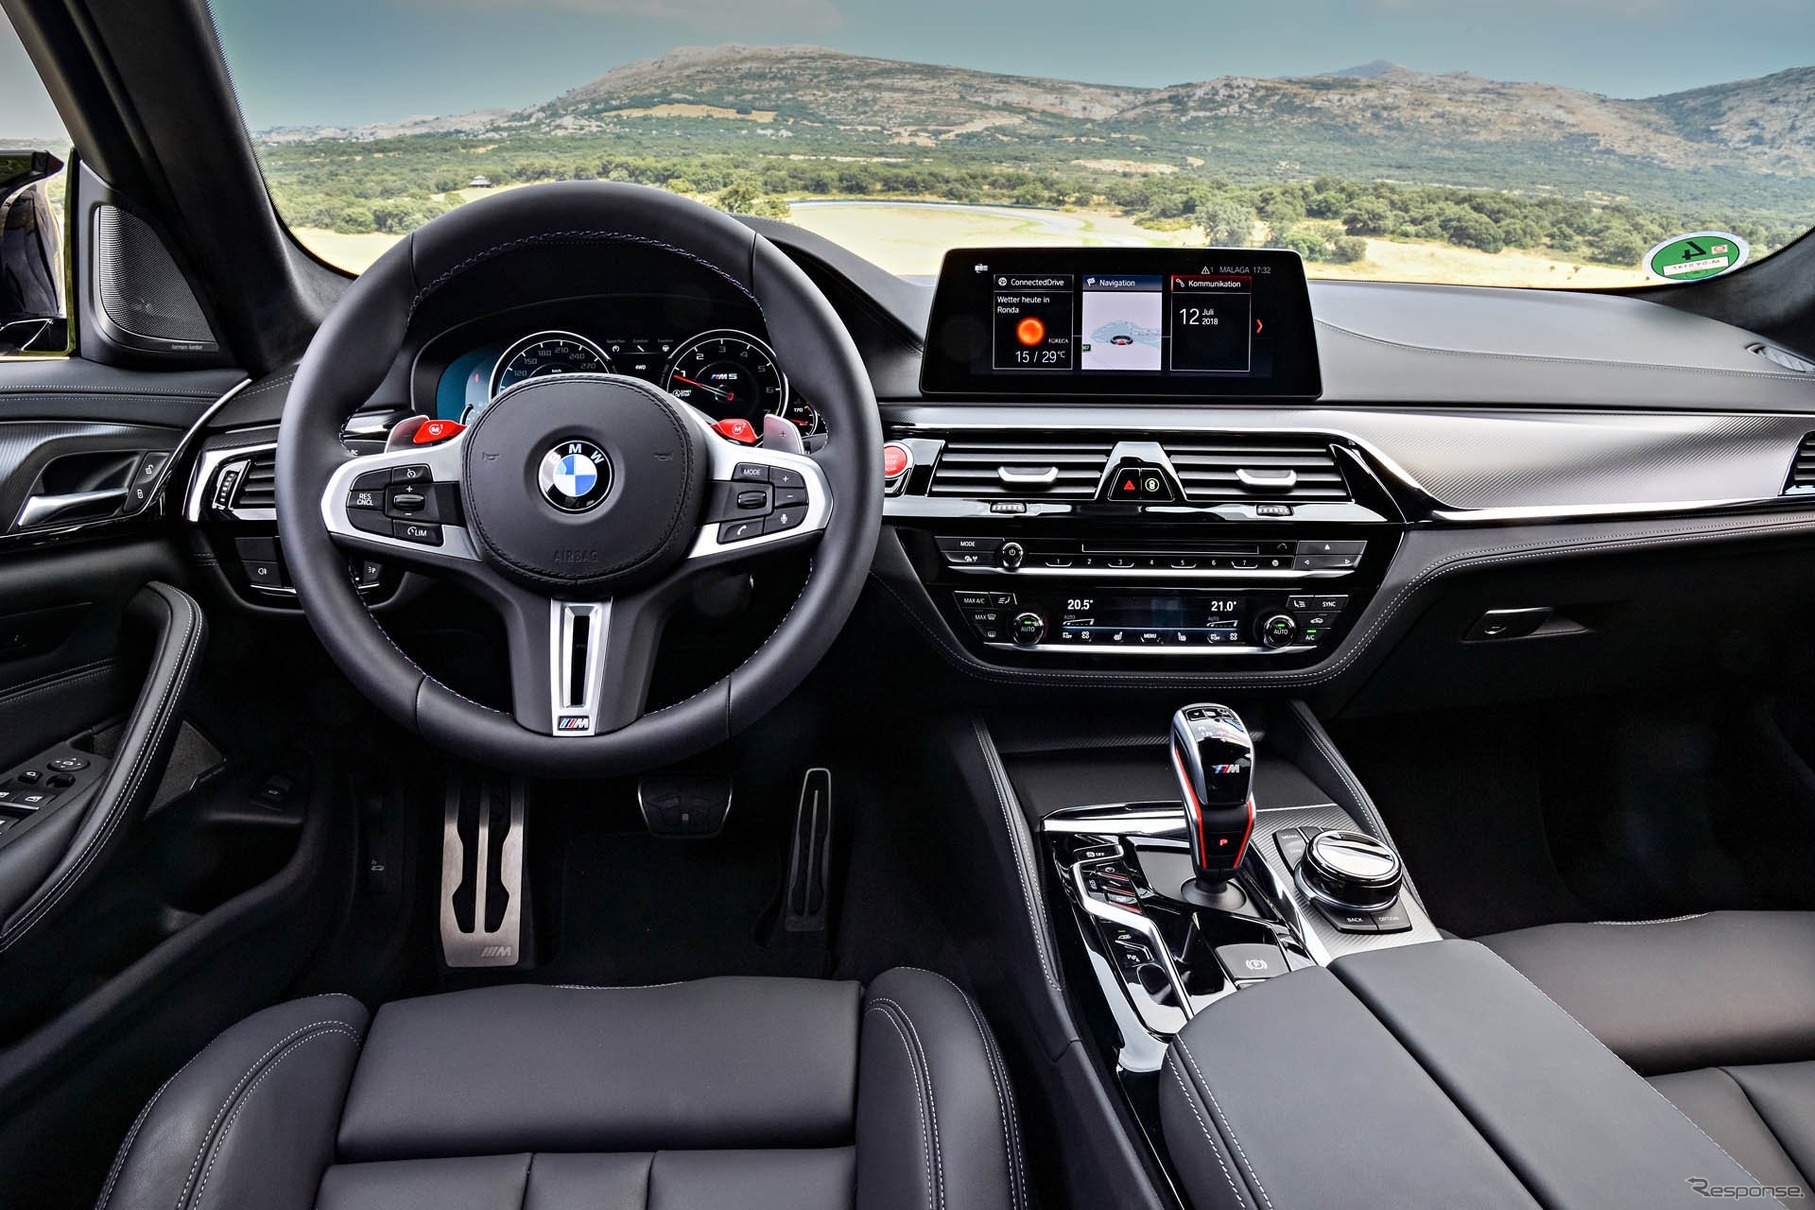 BMW M5 コンペティション